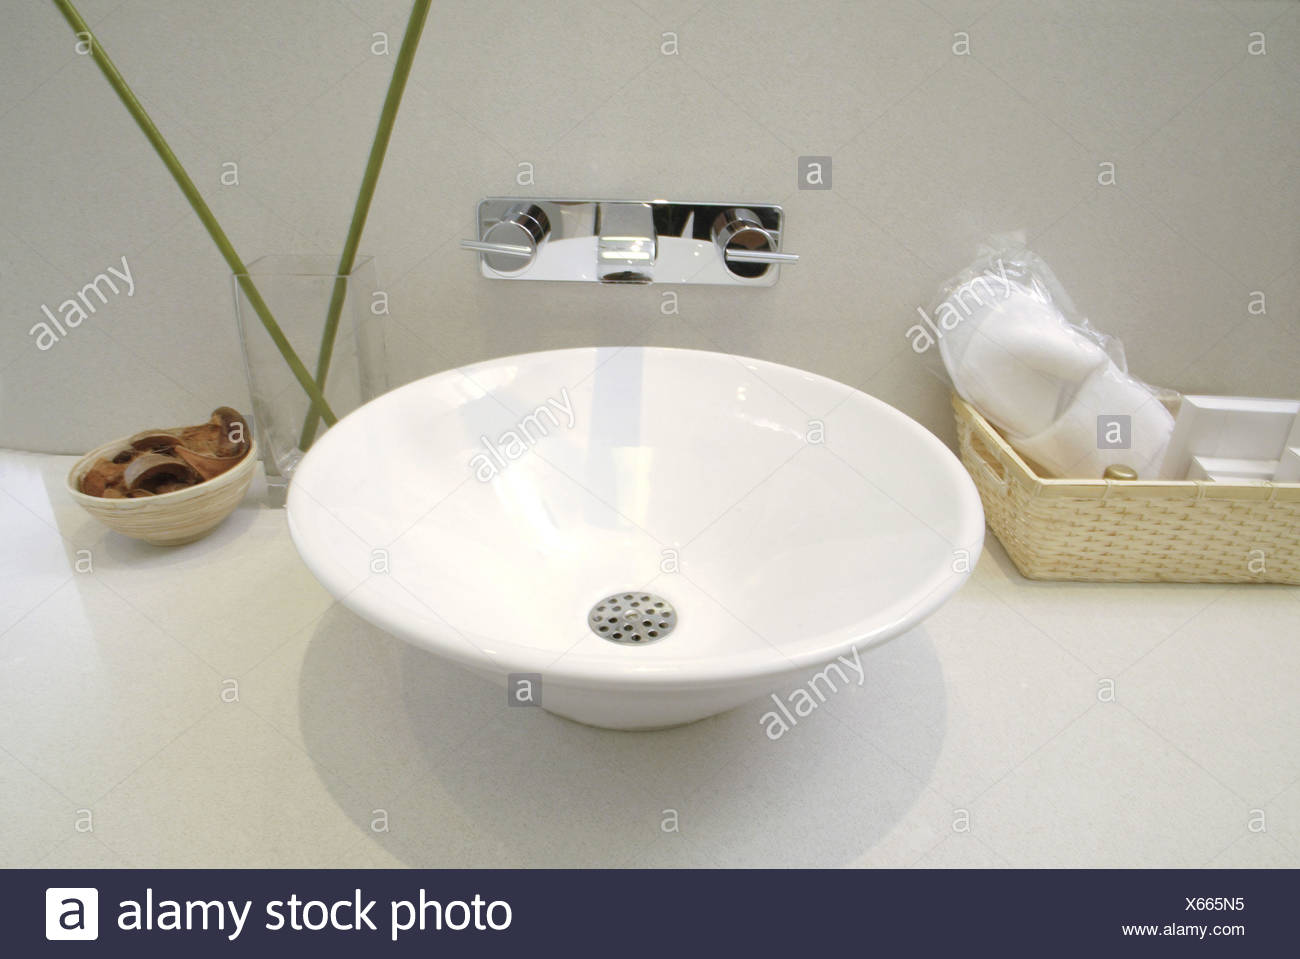 Badezimmer Waschtisch Sple Armatur Dekoration Bad 